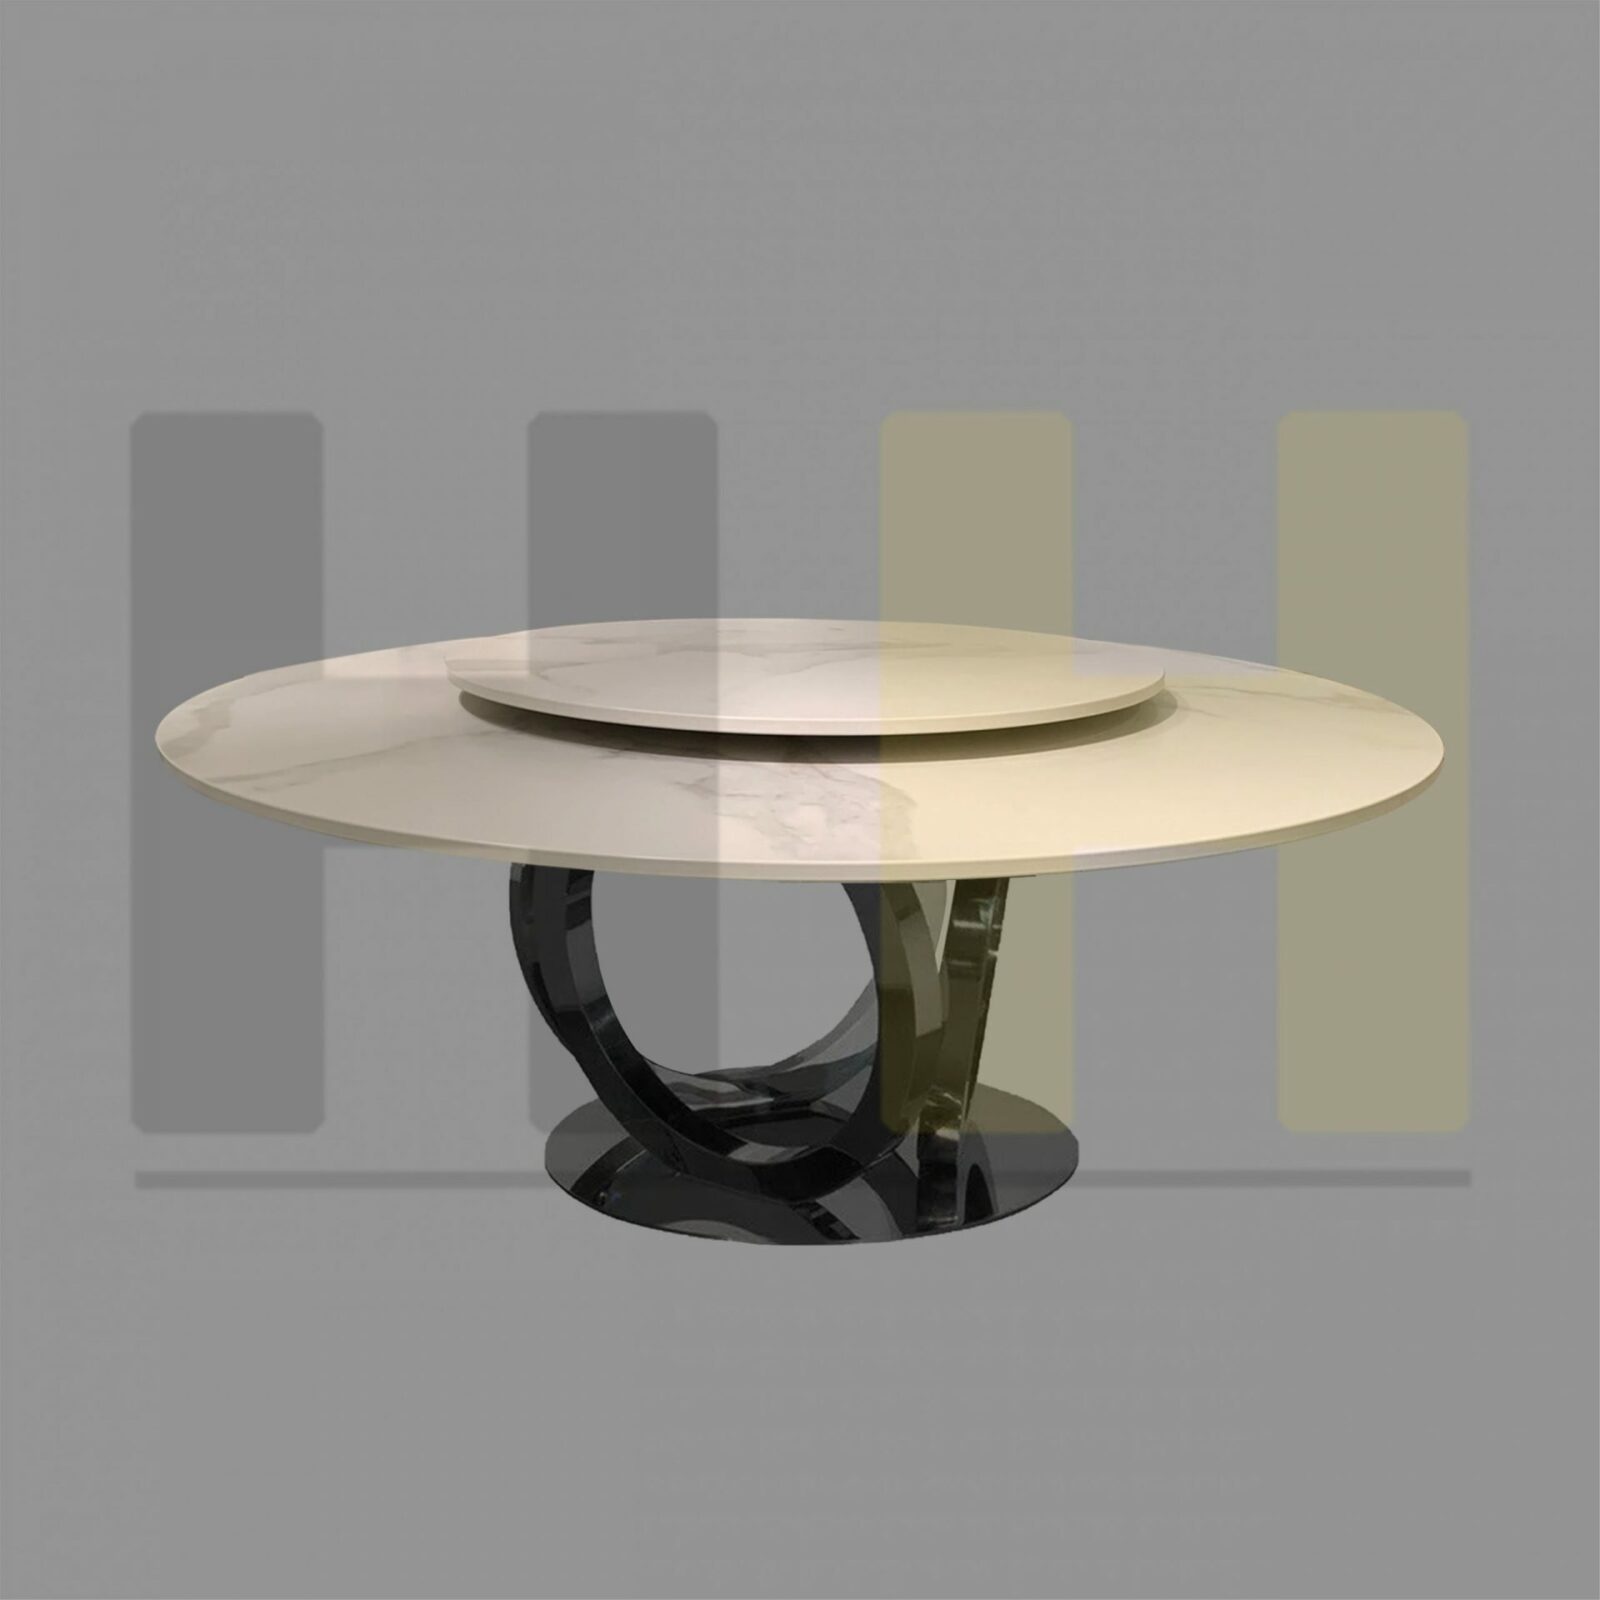 Fendi Galileo Galileo Maxi Table scaled